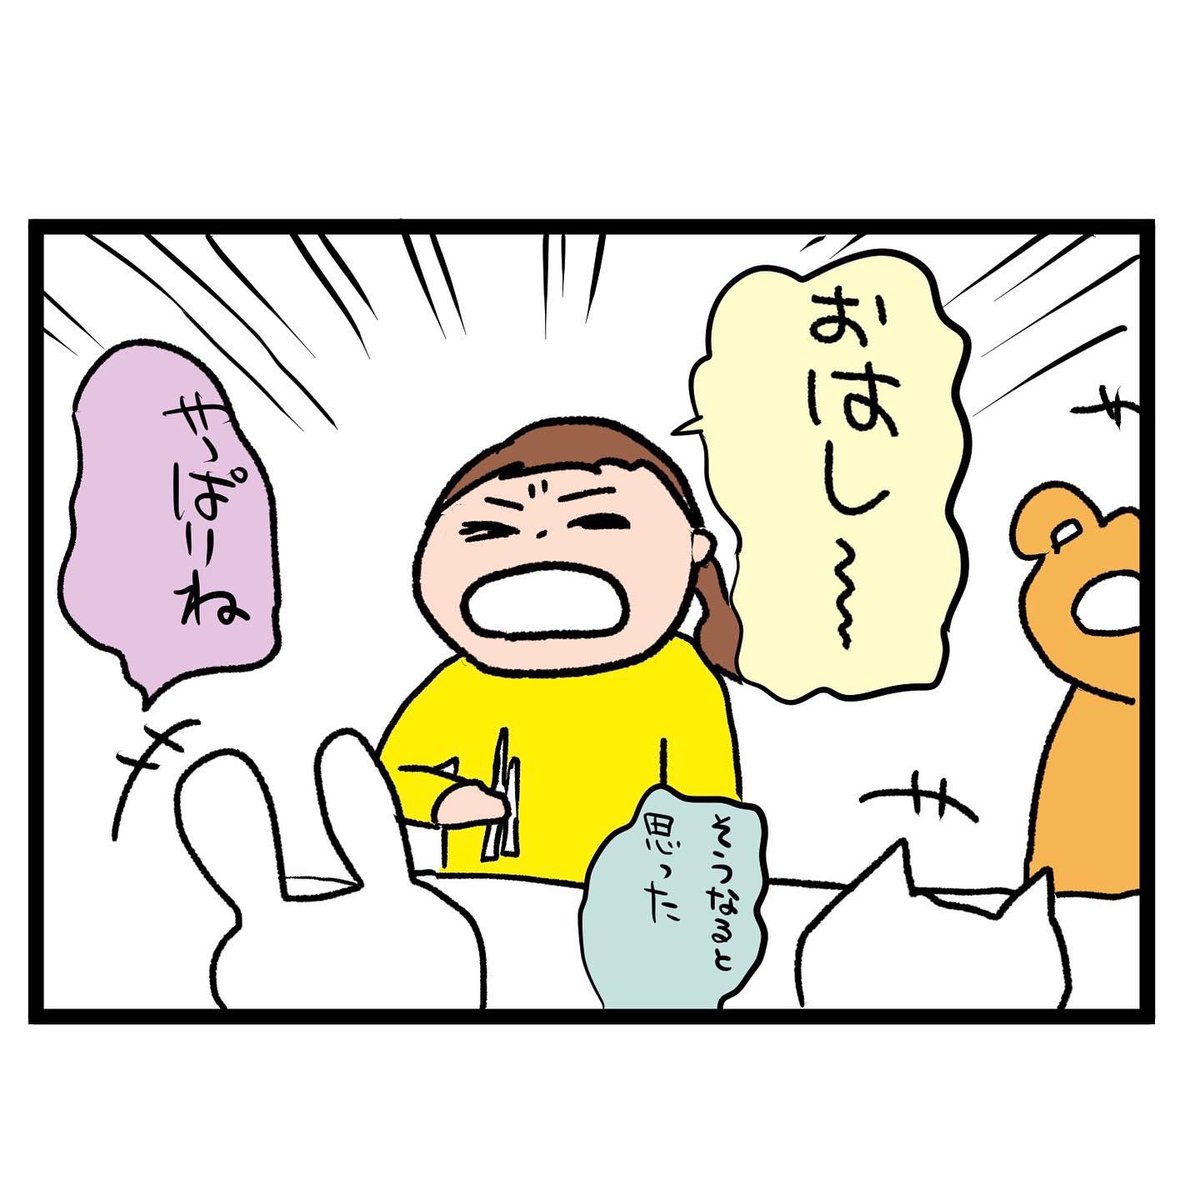 #四コマ漫画
#箸
豚肉に骨!? 